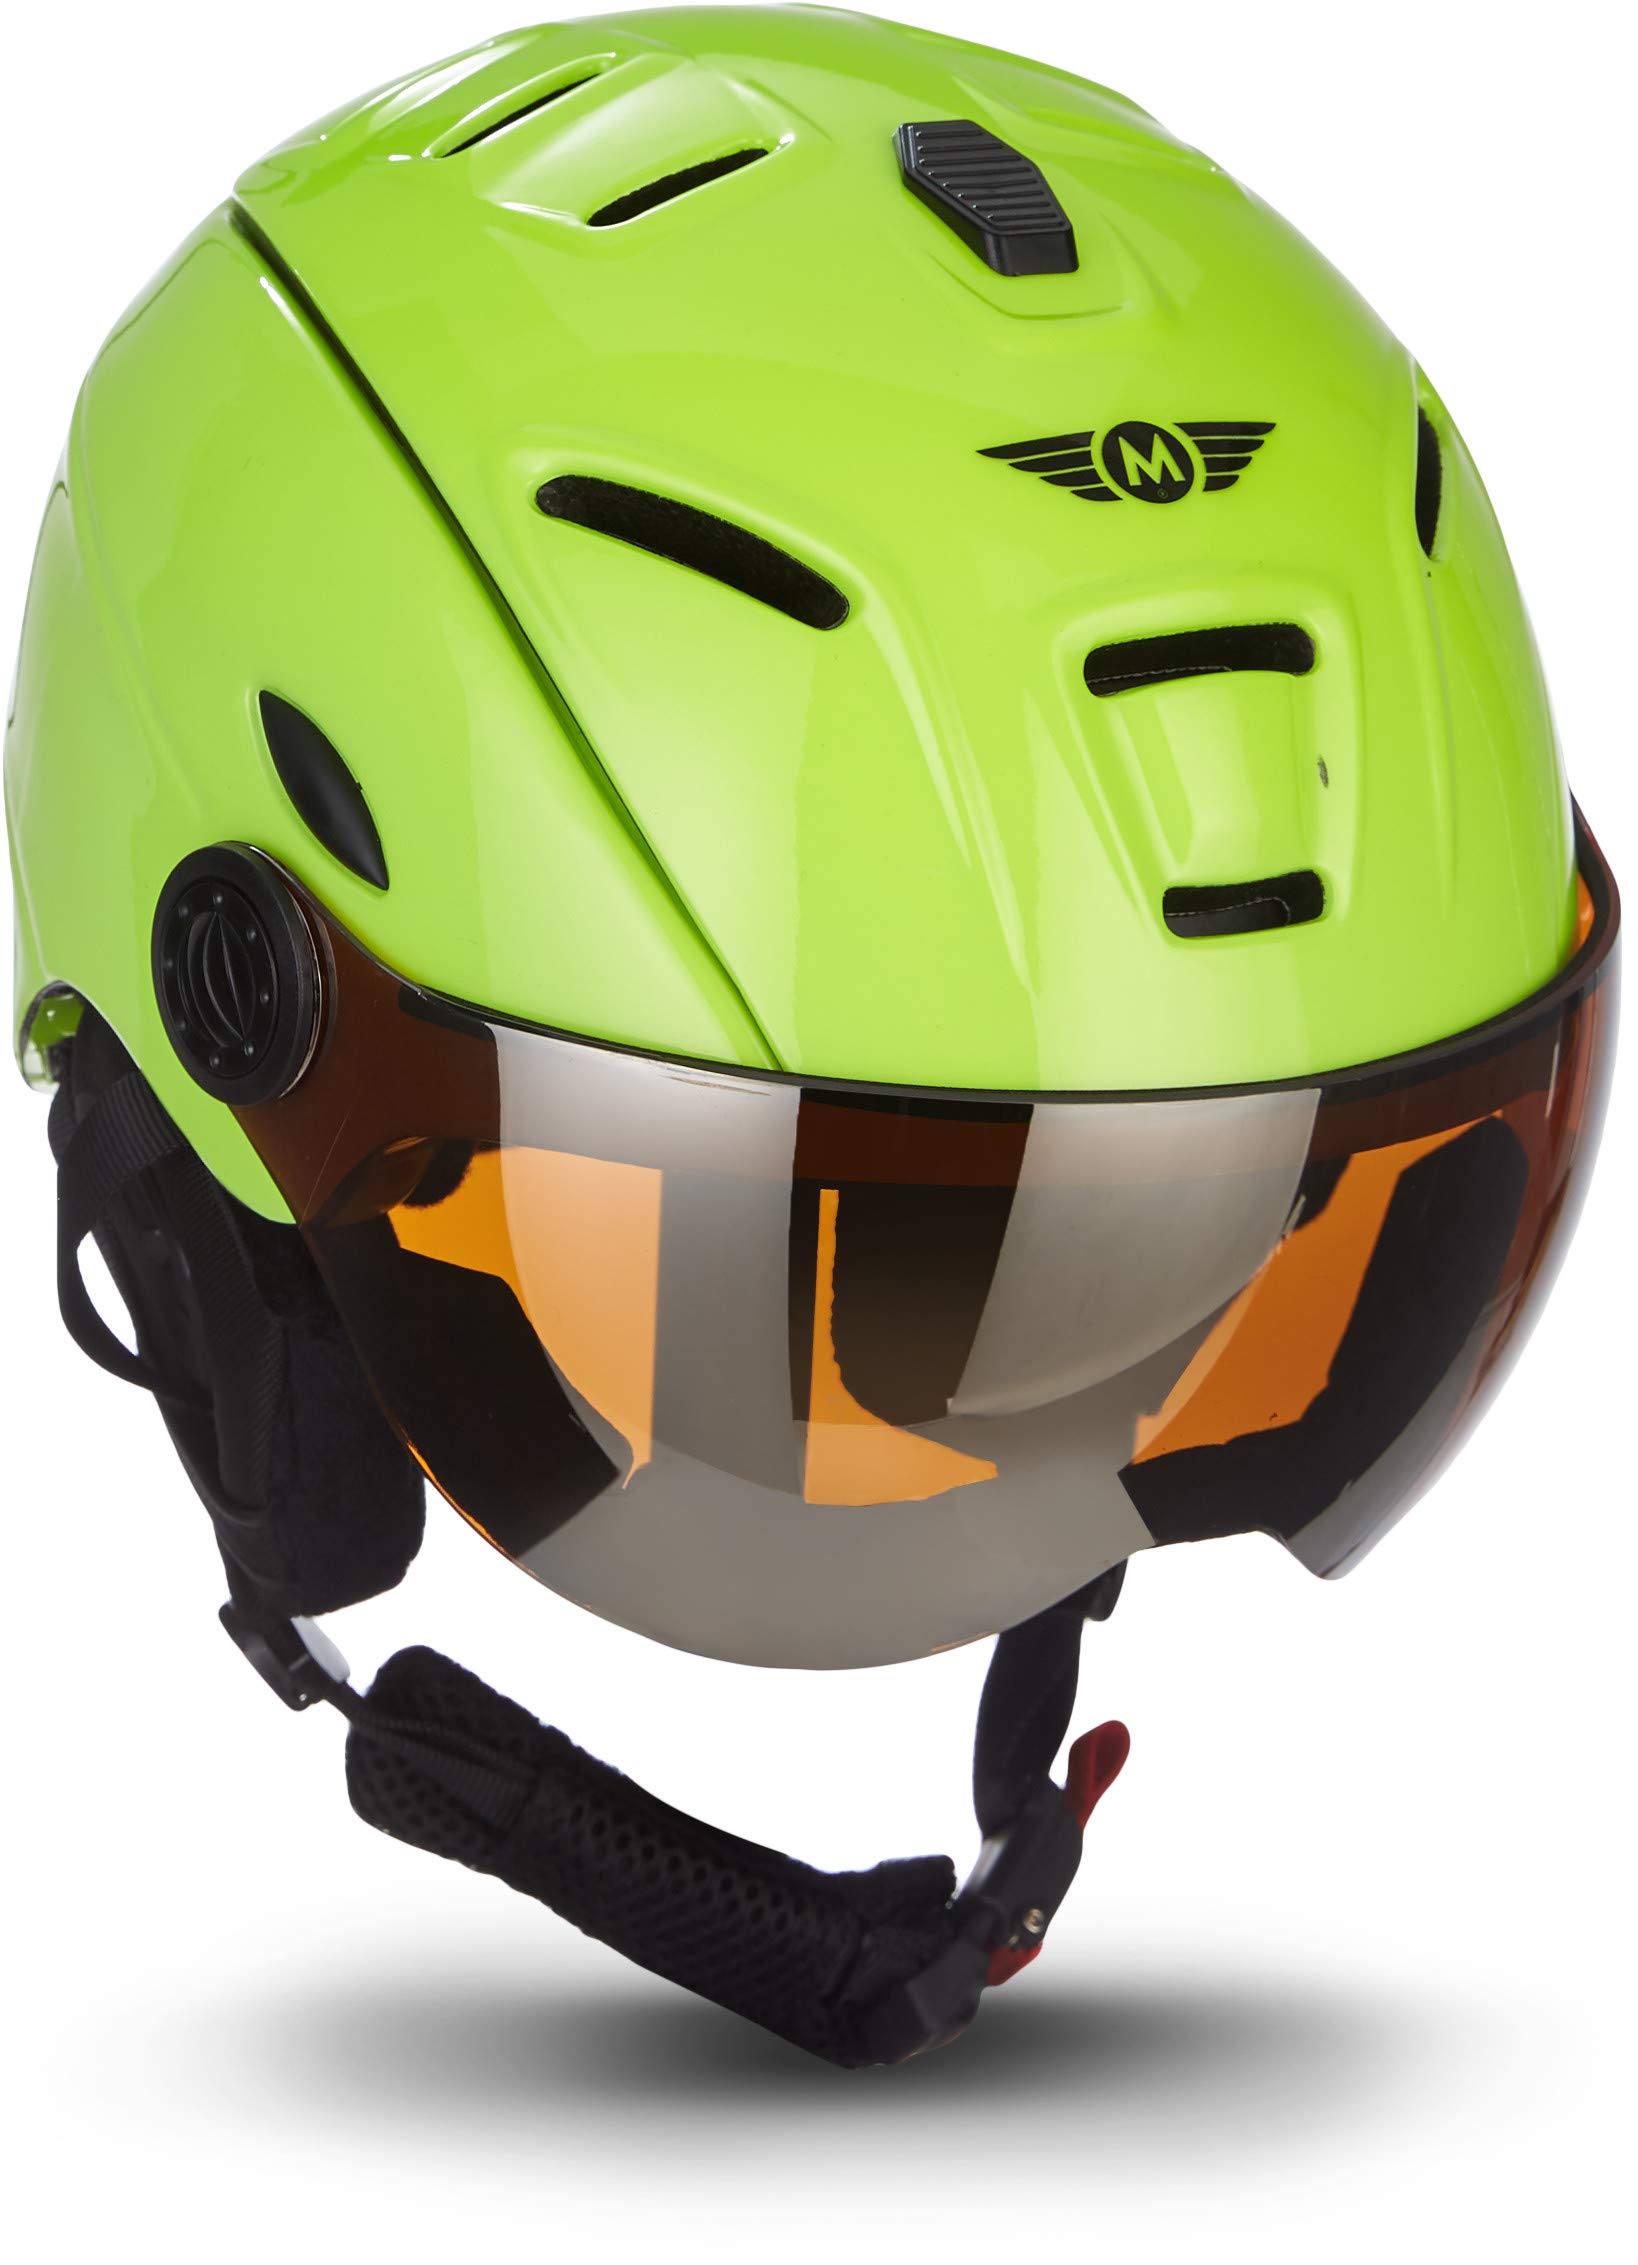 MOTO Helmets K96 · Ski-Helm Snowboard · Damen & Herren · EN-1077 Zertifiziert (Neon, M (55-58cm)) von Moto Helmets